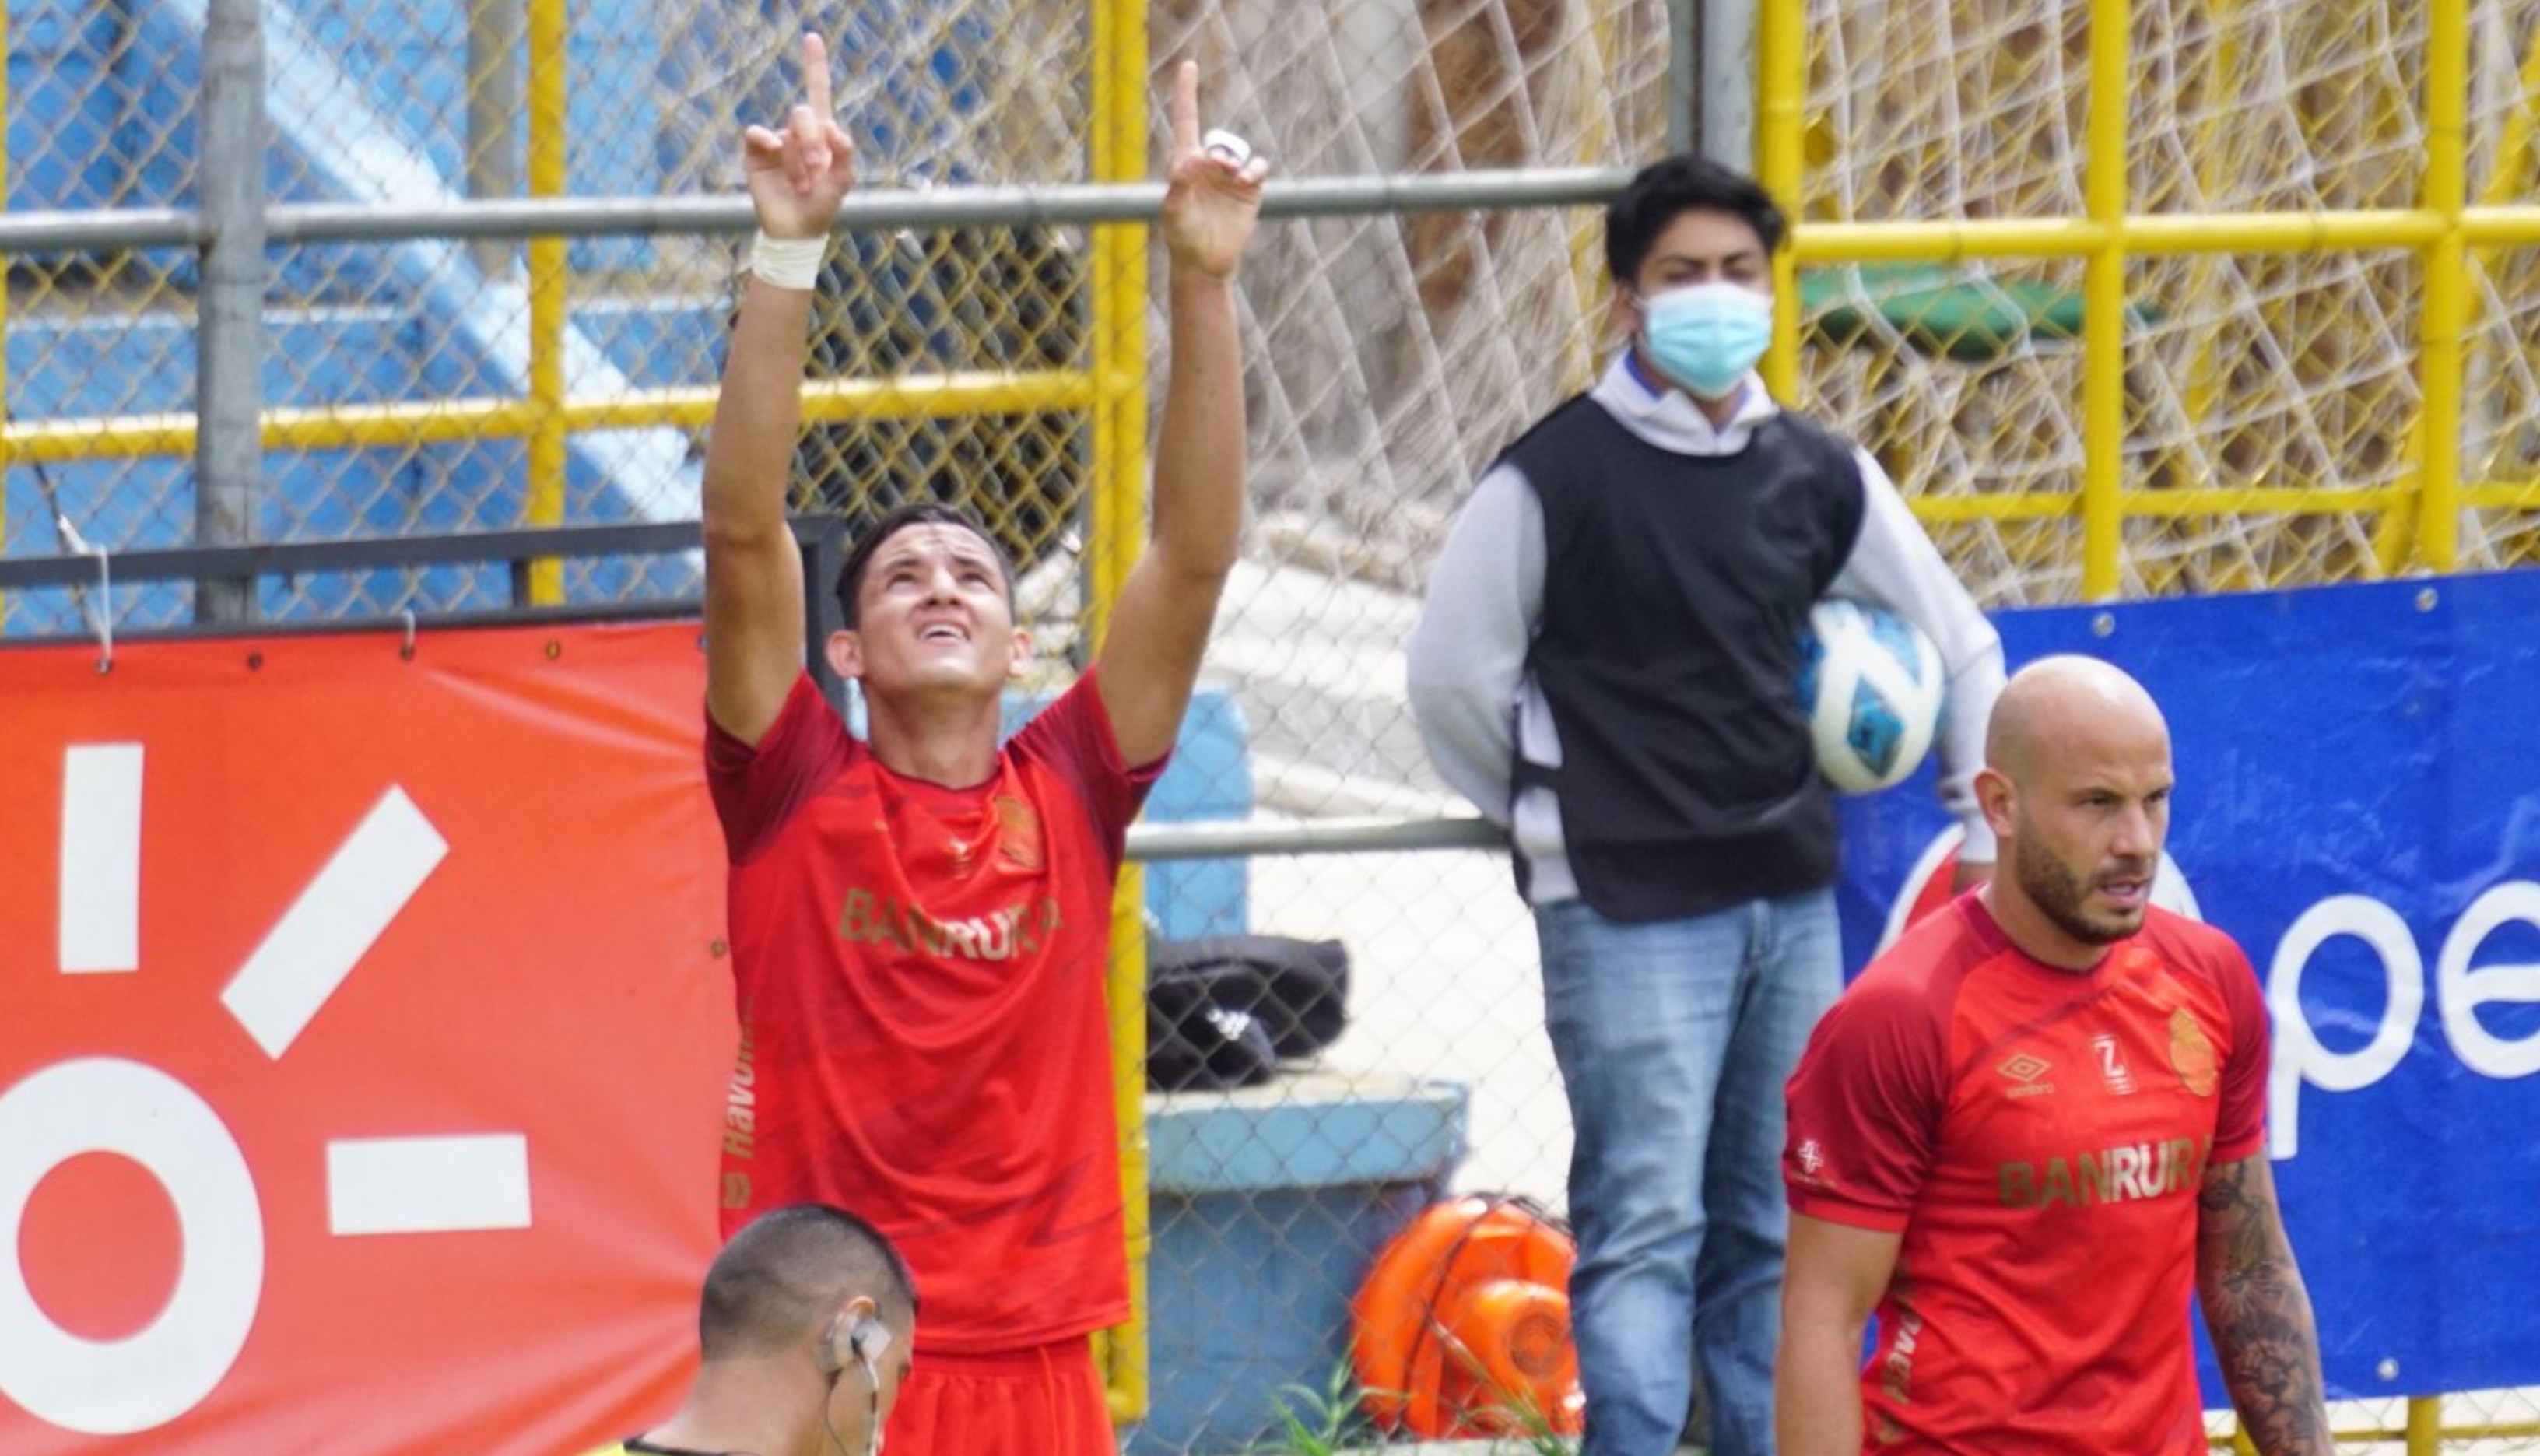 José Carlos Martínez, de Municipal, celebra uno de los dos goles que marcó este miércoles 11 de agosto ante Malacateco en el partido por la tercera fecha del torneo Apertura 2021. Foto cortesía Andrés ADF